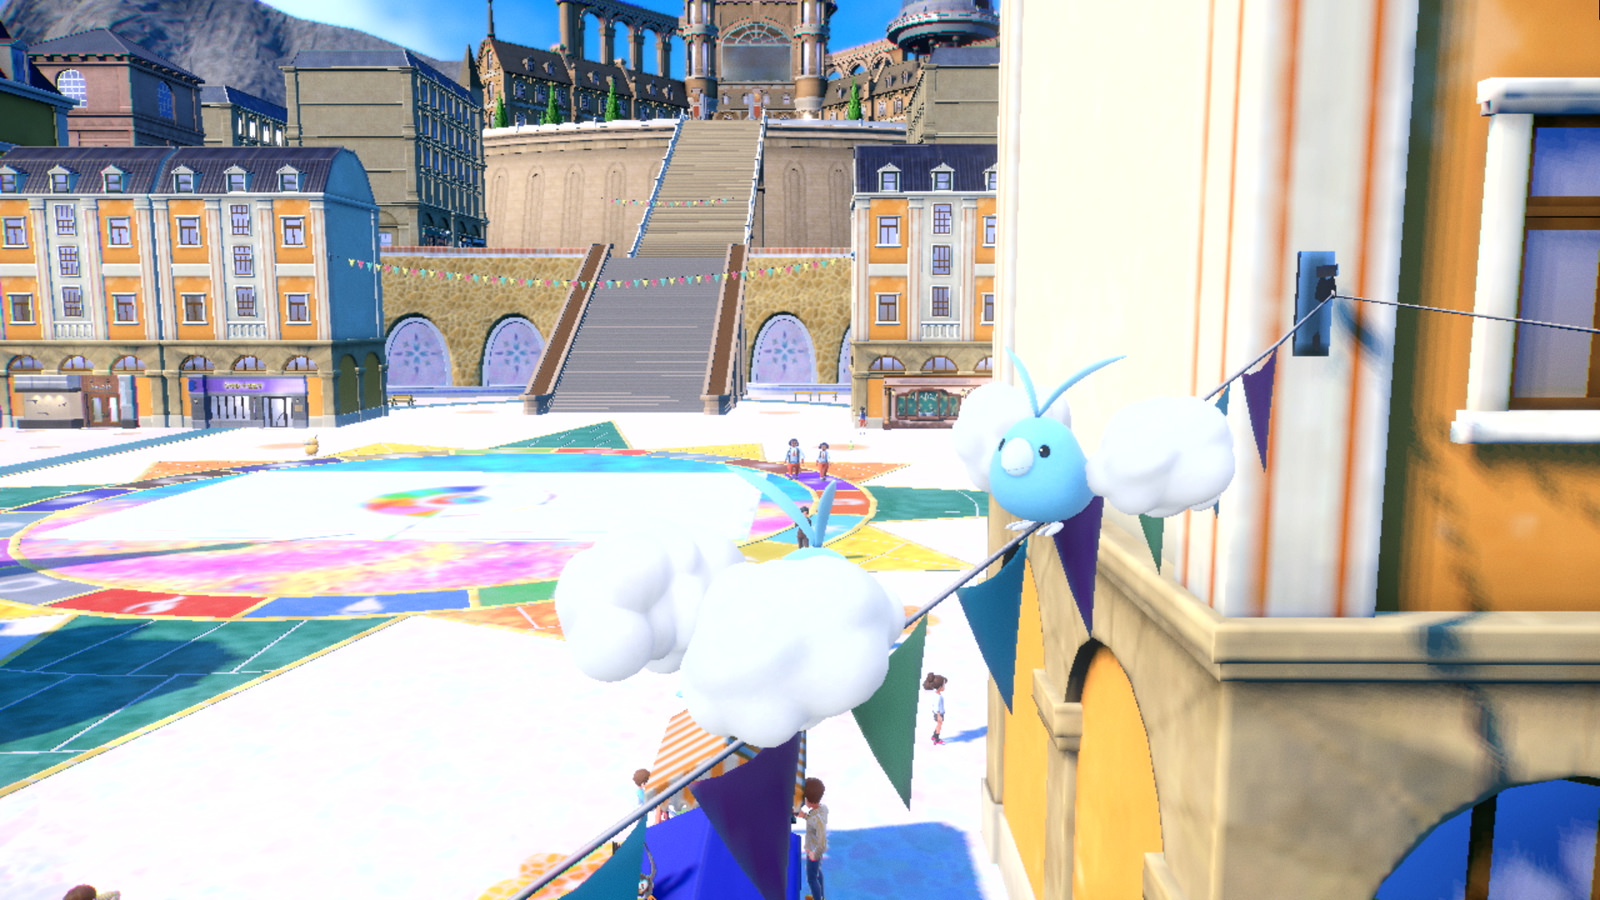 Capturas de pantalla oficiales de los entornos de Pokémon Escarlata y Violeta